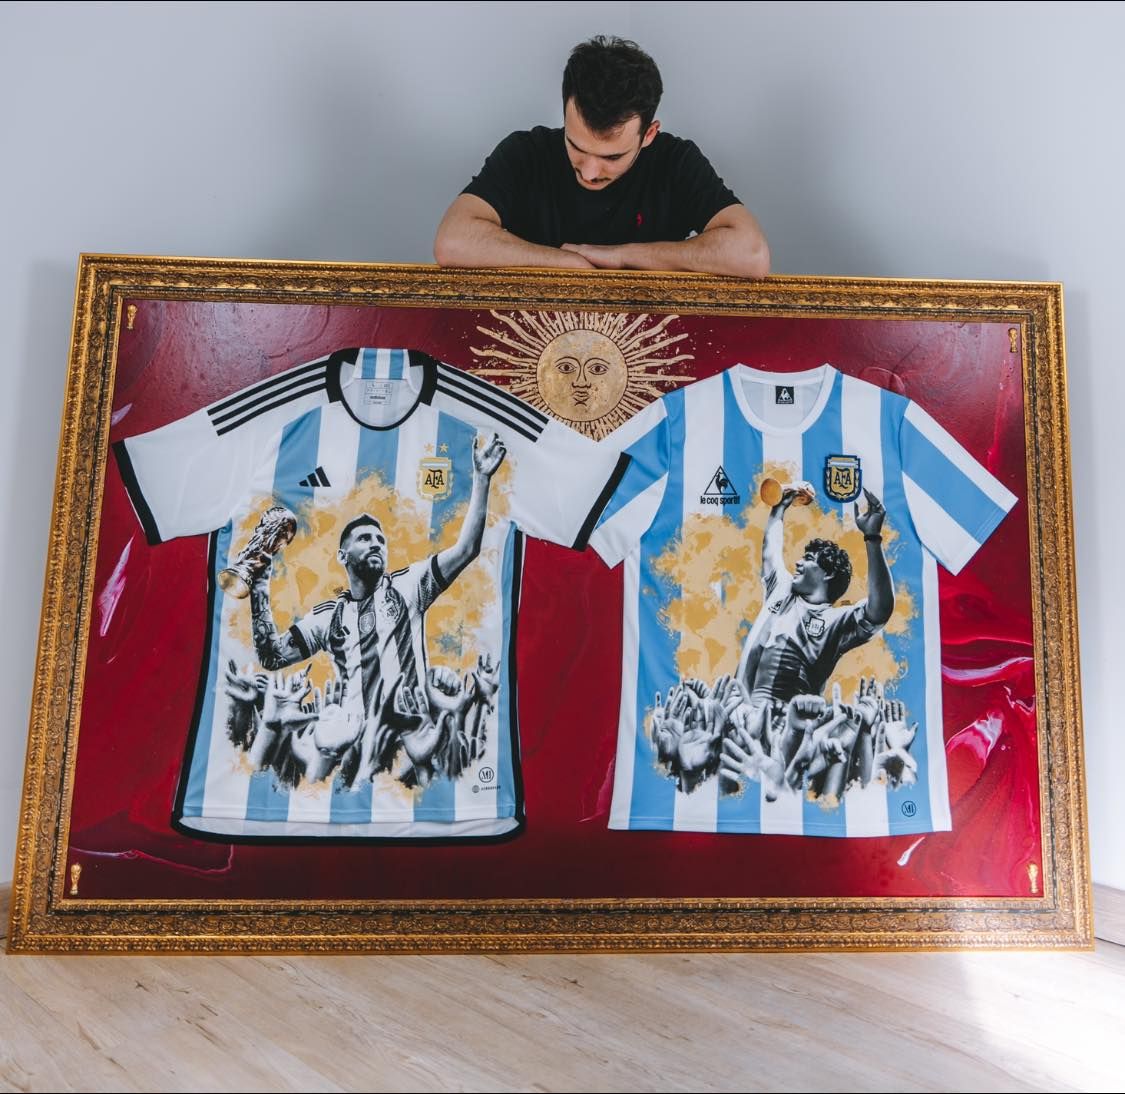 Những chiếc áo thi đấu của Messi, Maradona và Mats được người hâm mộ trên khắp thế giới háo hức chờ đợi. Bạn có muốn thấy những hình ảnh độc đáo về các siêu sao bóng đá từ Argentina và Thụy Điển này không? Hãy đến ngay xem những hình ảnh này để được ngắm nhìn những bộ áo đẹp nhất.